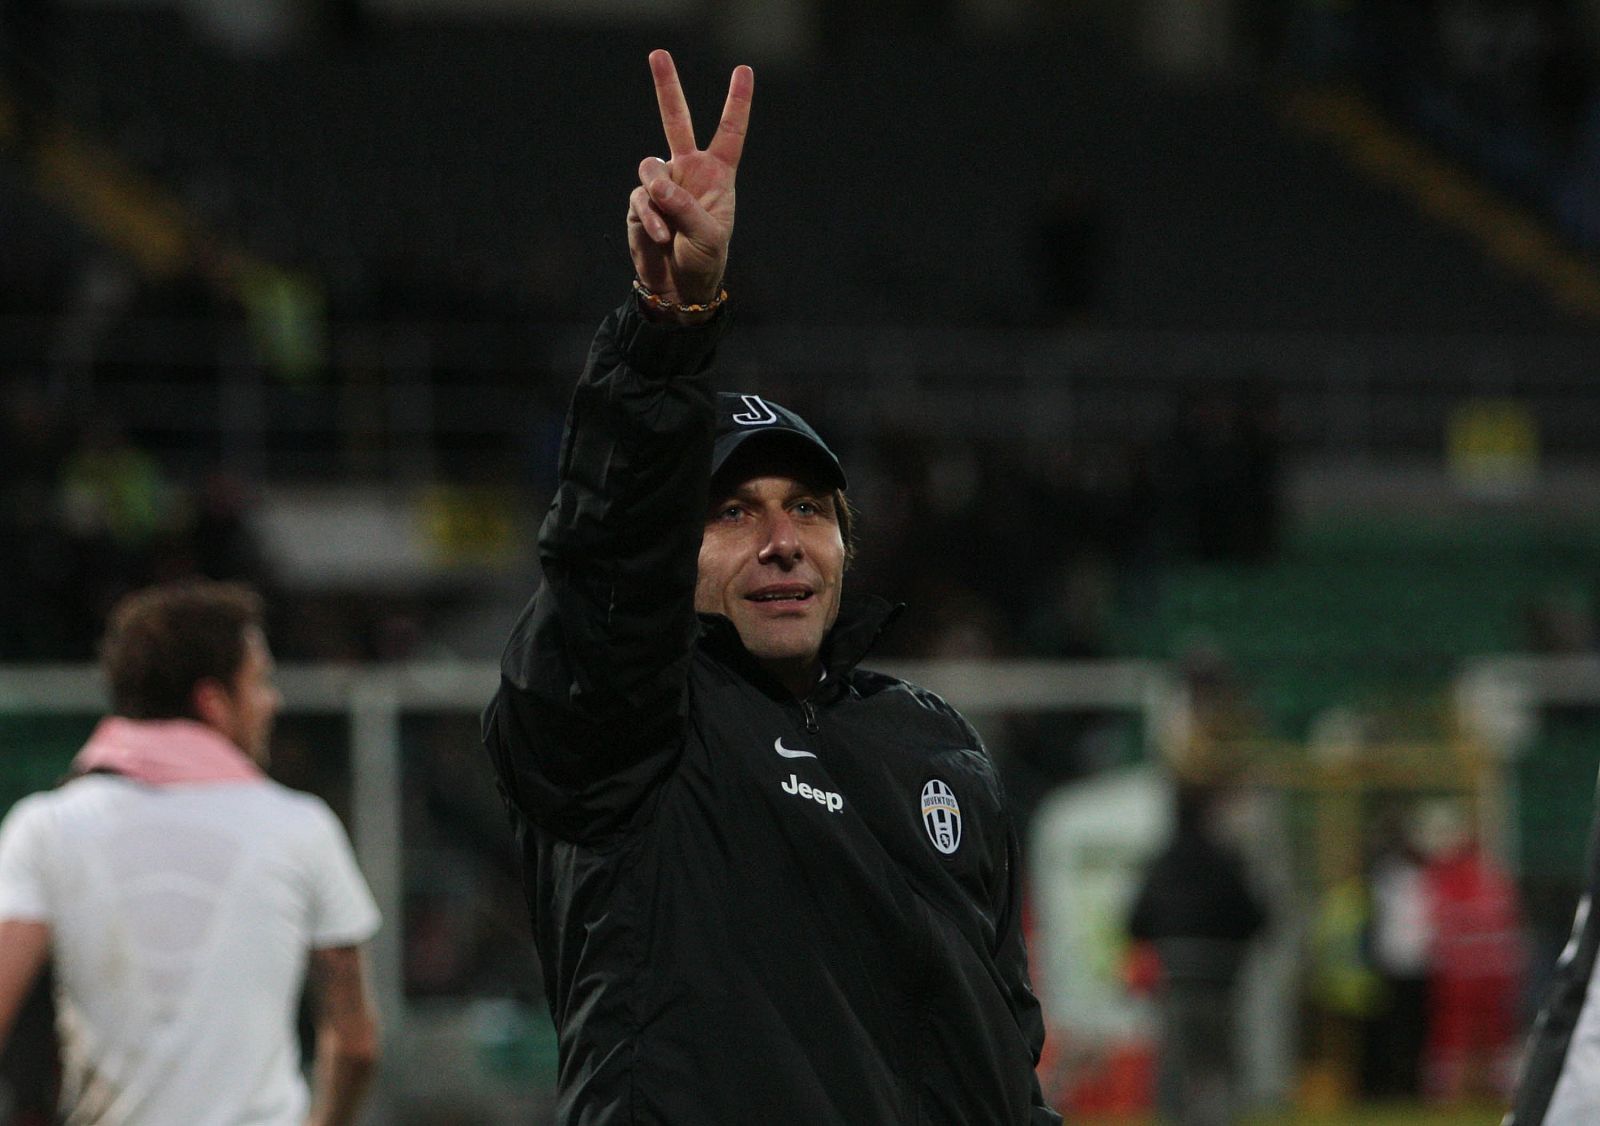 Imagen del entrenador de la 'Juve', Antonio Conte, en su vuelta a los banquillos tras cuatro meses de sanción.